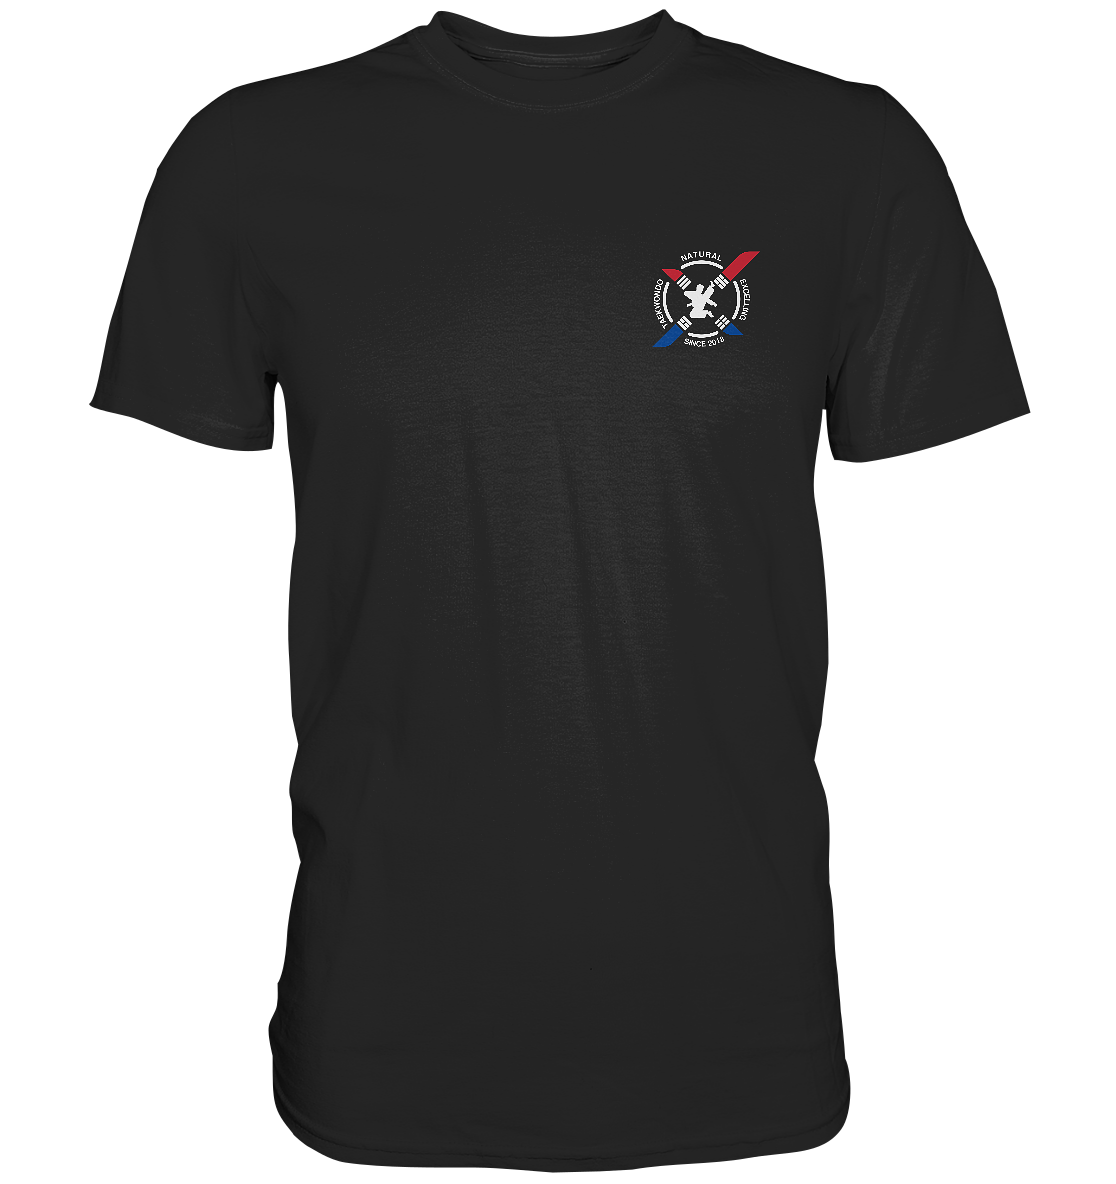 NEXT TAEKWONDO - Team NExT - Basic Shirt